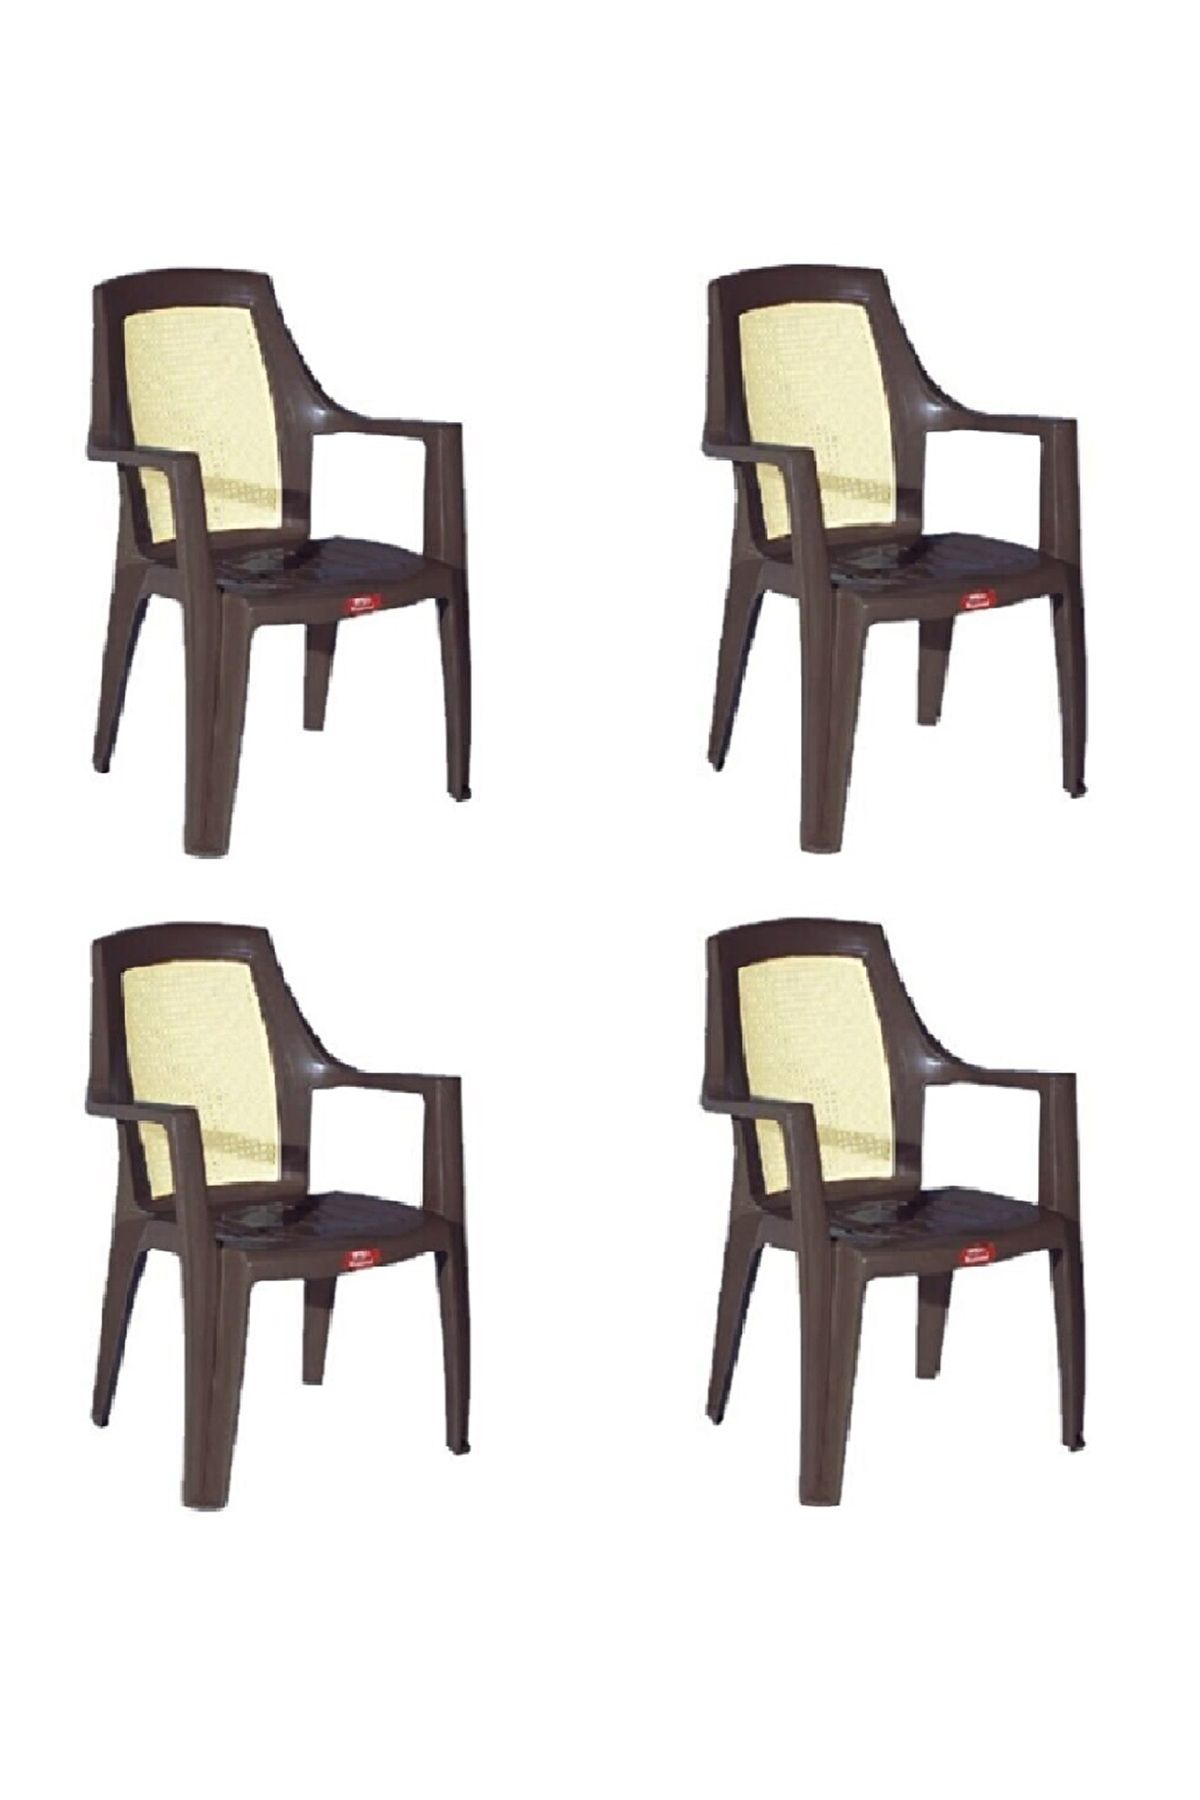 ALMİNA Plastik Bahçe Sandalyesi Bahçe Balkon Ve Teras Sandalyesi Çift Renk Sandalye Takımı 4 Adet